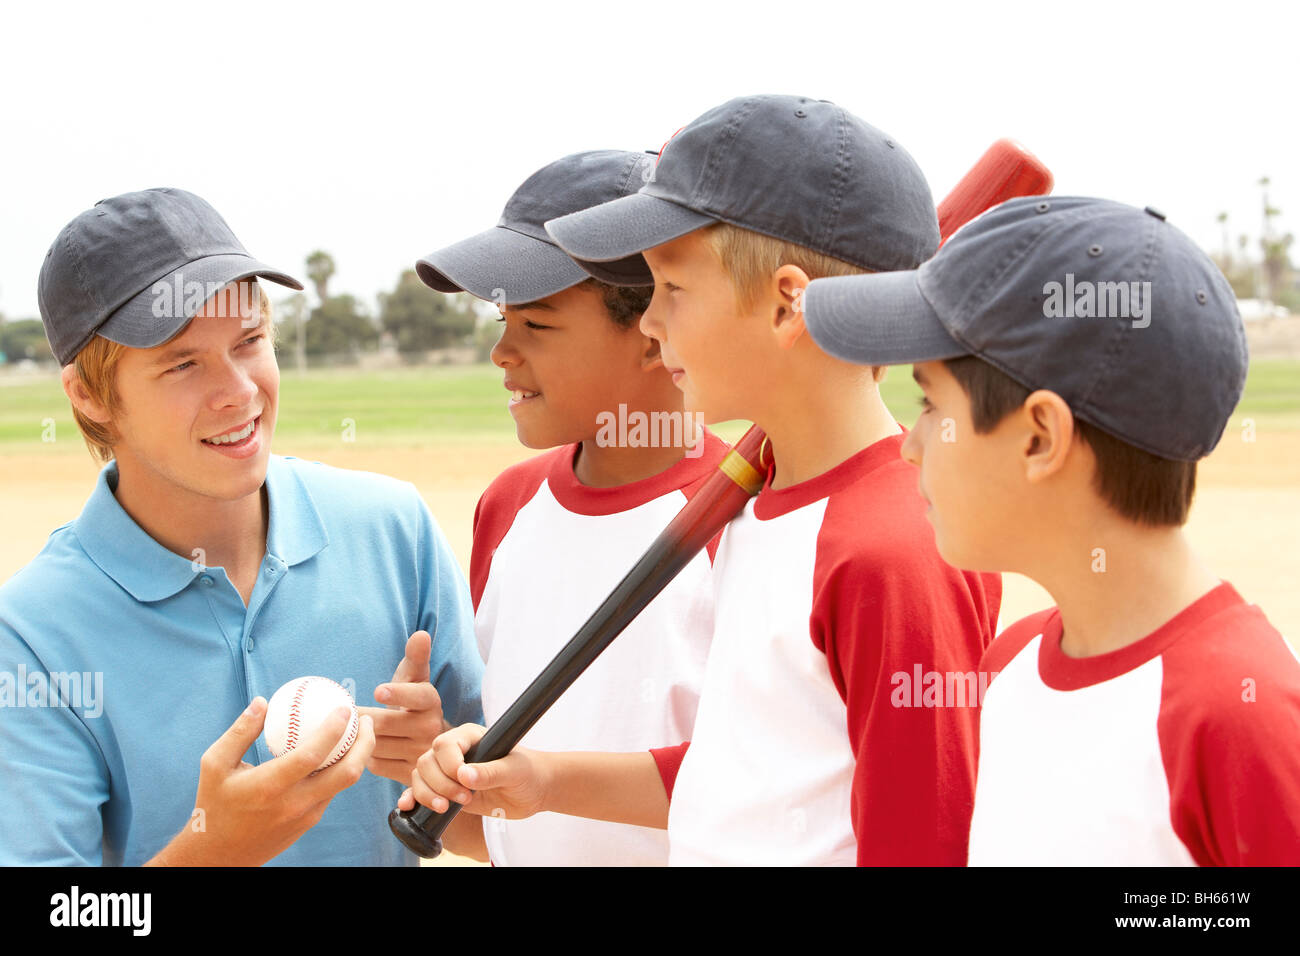 Les jeunes garçons dans l'équipe de baseball avec l'entraîneur Banque D'Images